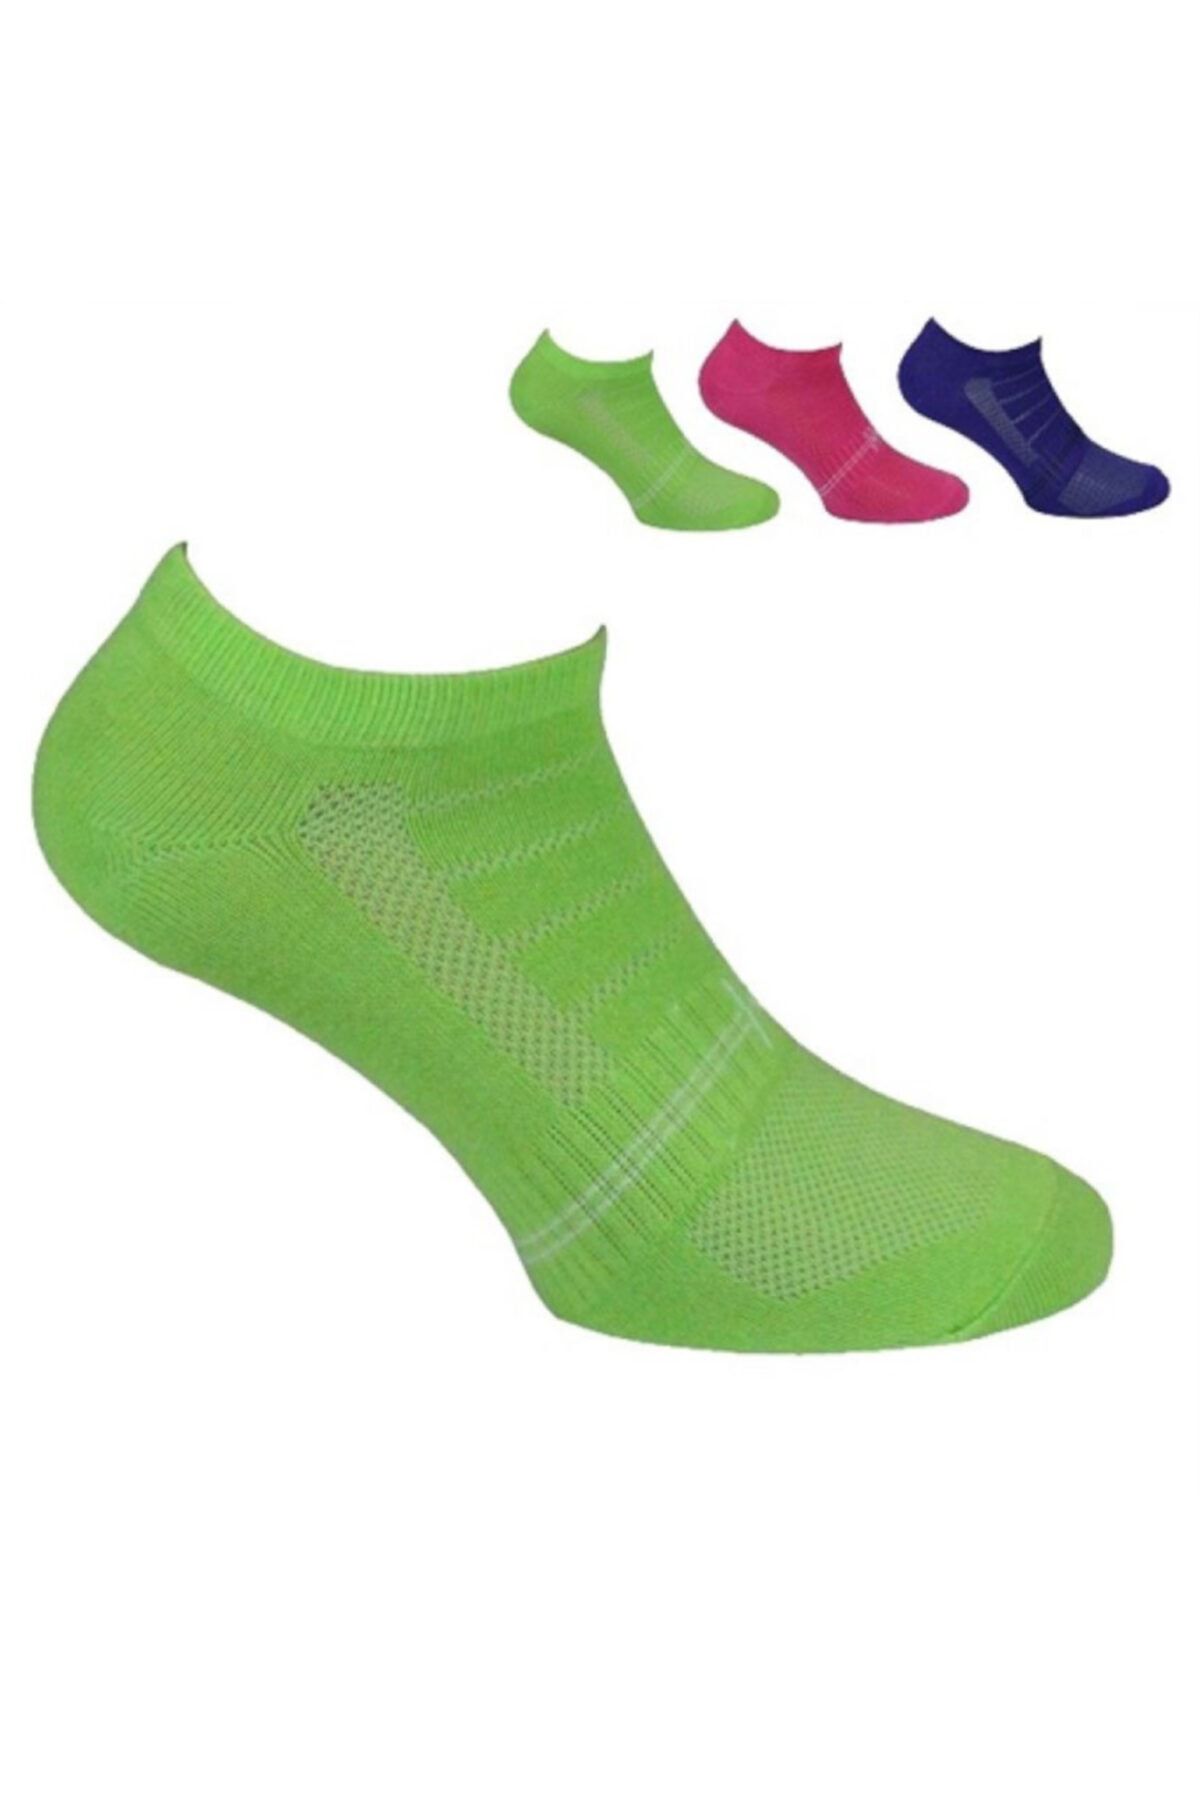 Norfolk Yeşil Pembe Mor 3'lü Paket Kısa Çocuk Çorabı Yogi